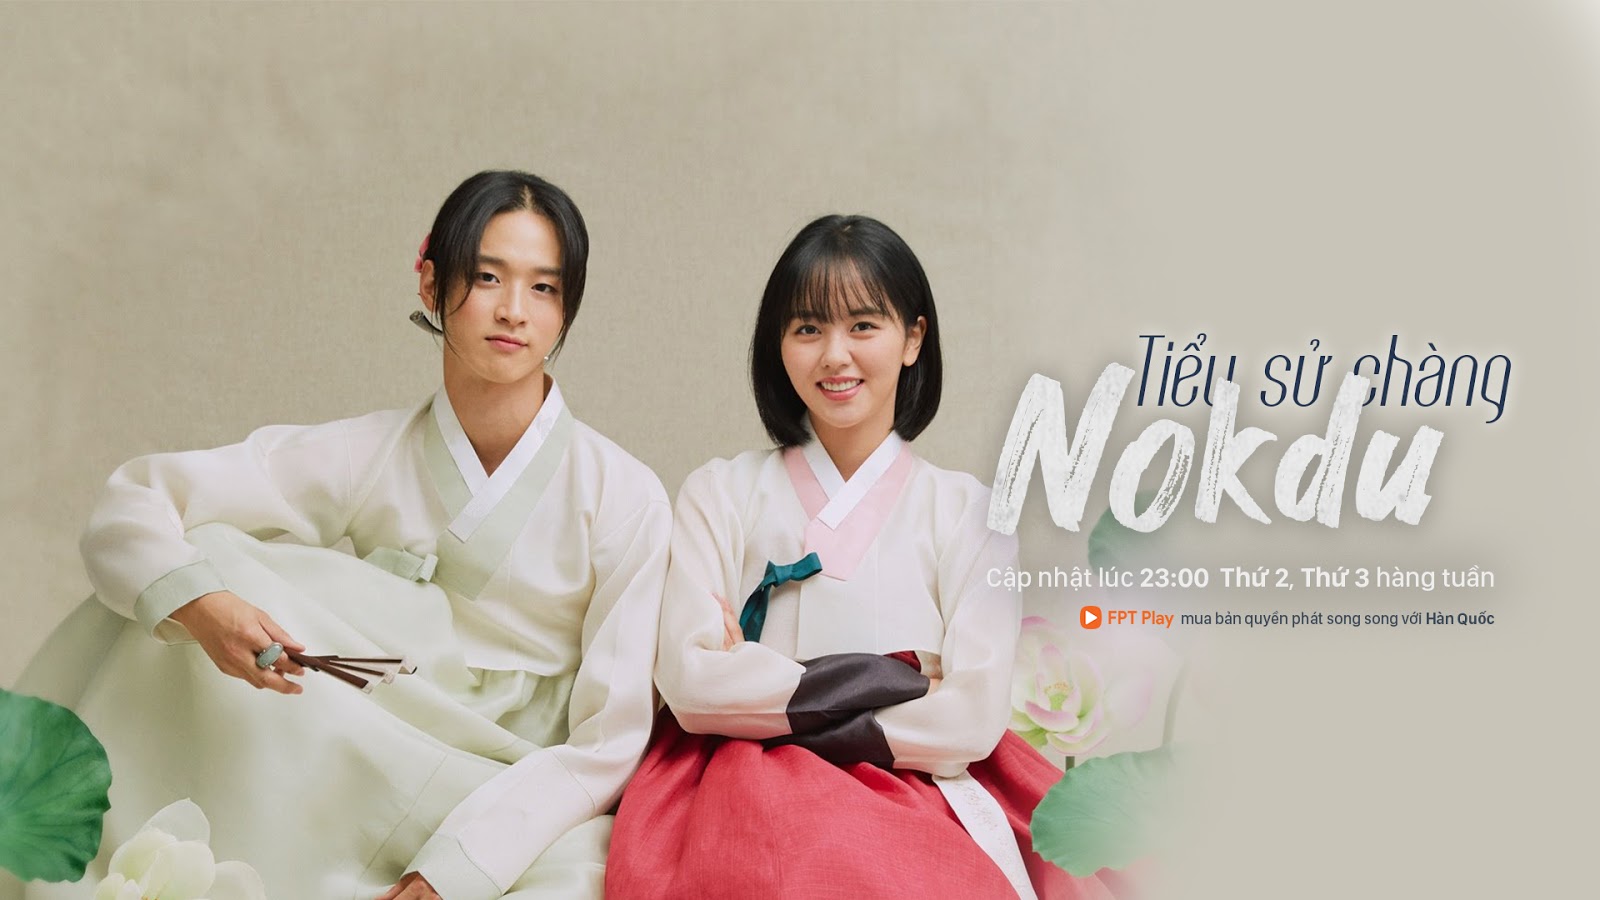 Tiểu sử chàng Nokdu - The Tale of Nokdu